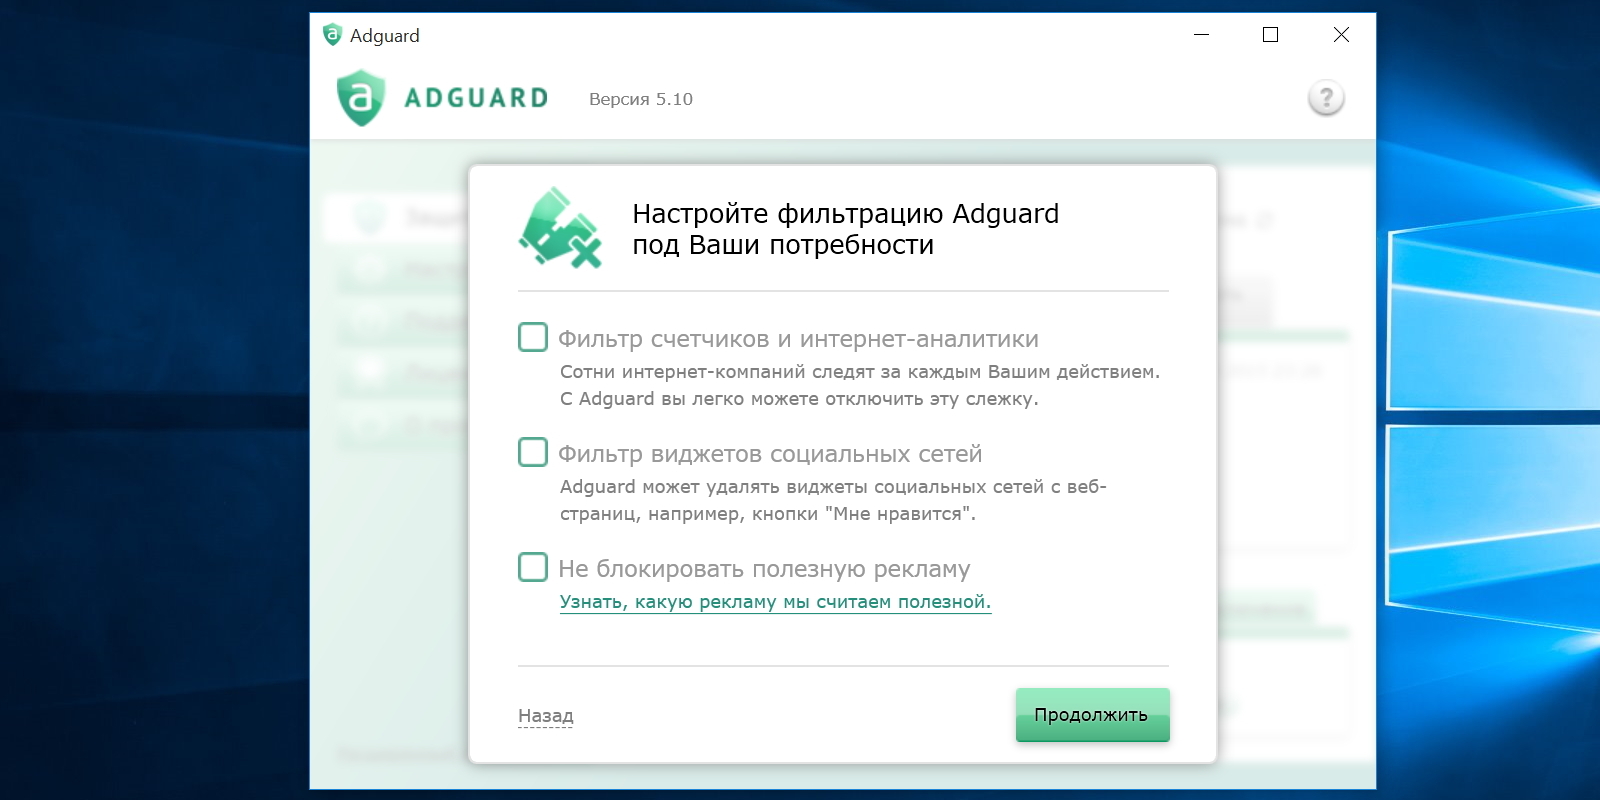 Скачать adguard бесплатно на русском языке: для windows и mac os